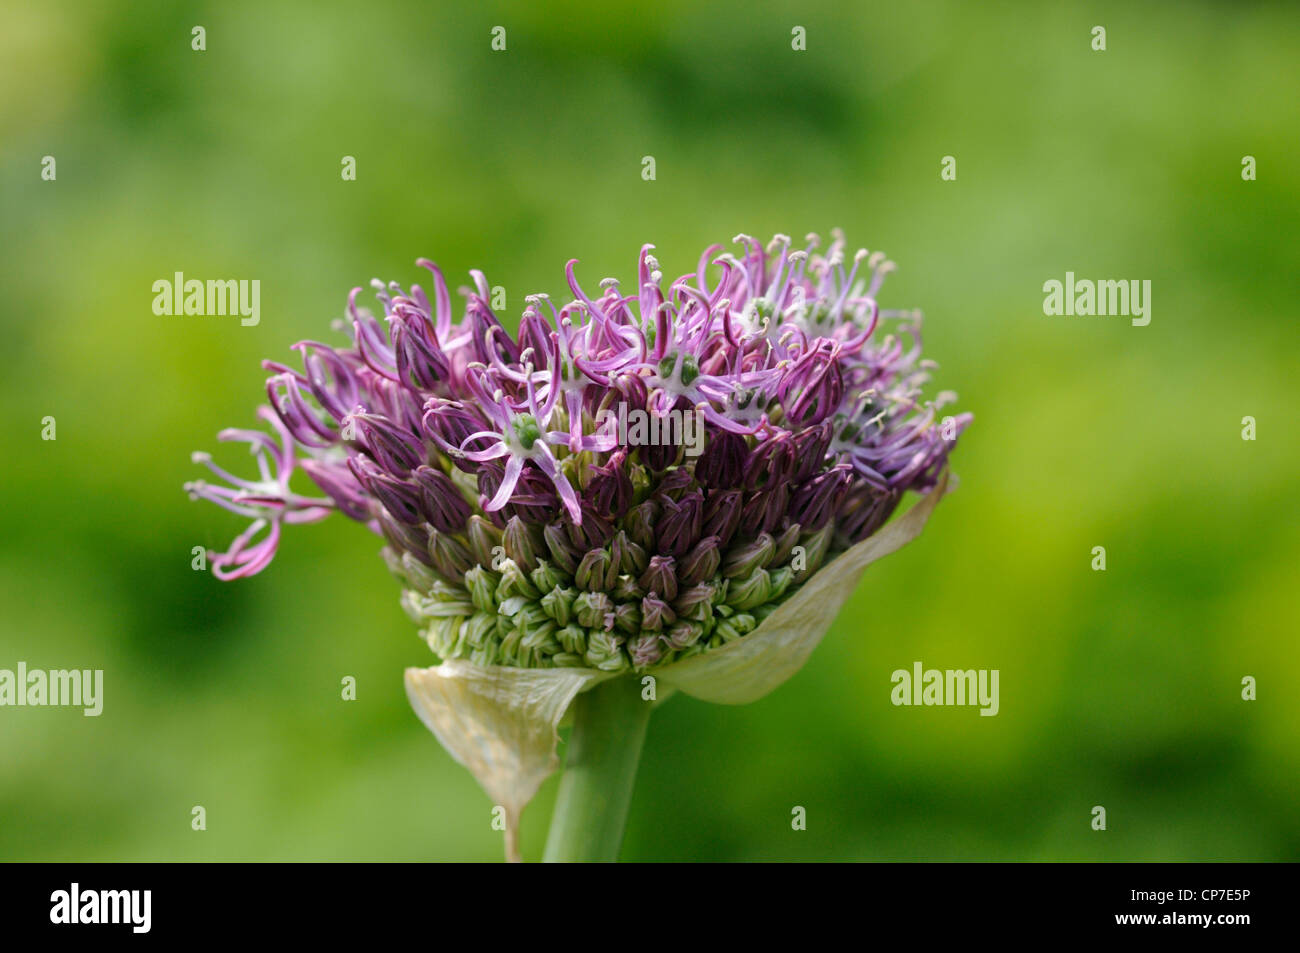 Allium giganteum, Allium, Purple, Green. Stock Photo